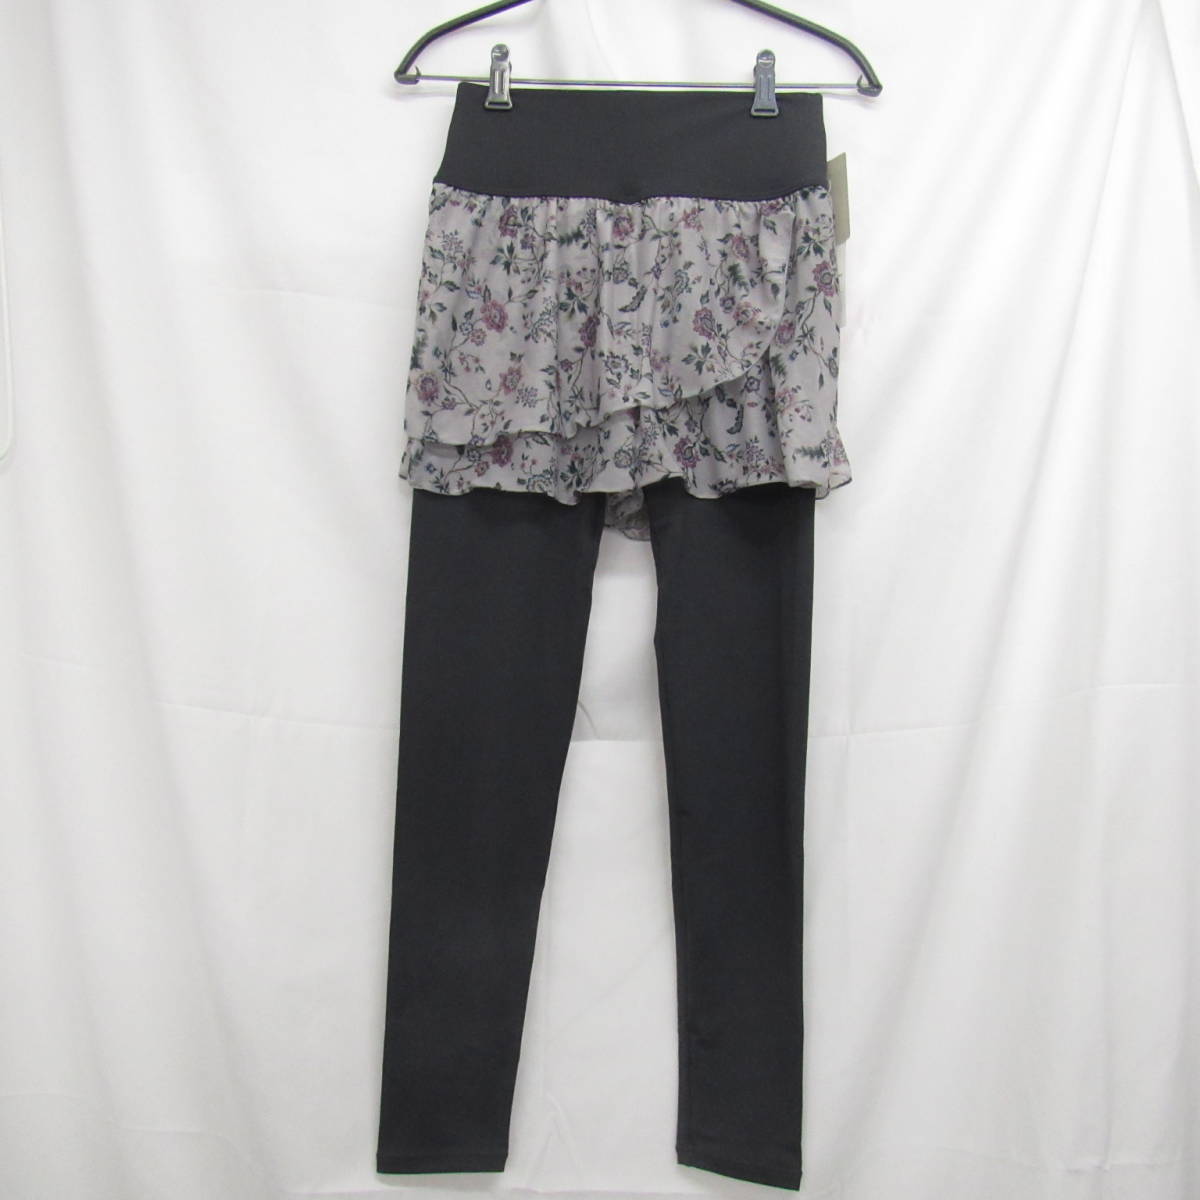 87-00271 [ outlet ] tea cot short pants attaching leggings yoga ballet Dance waist rubber lady's M size gray floral print 